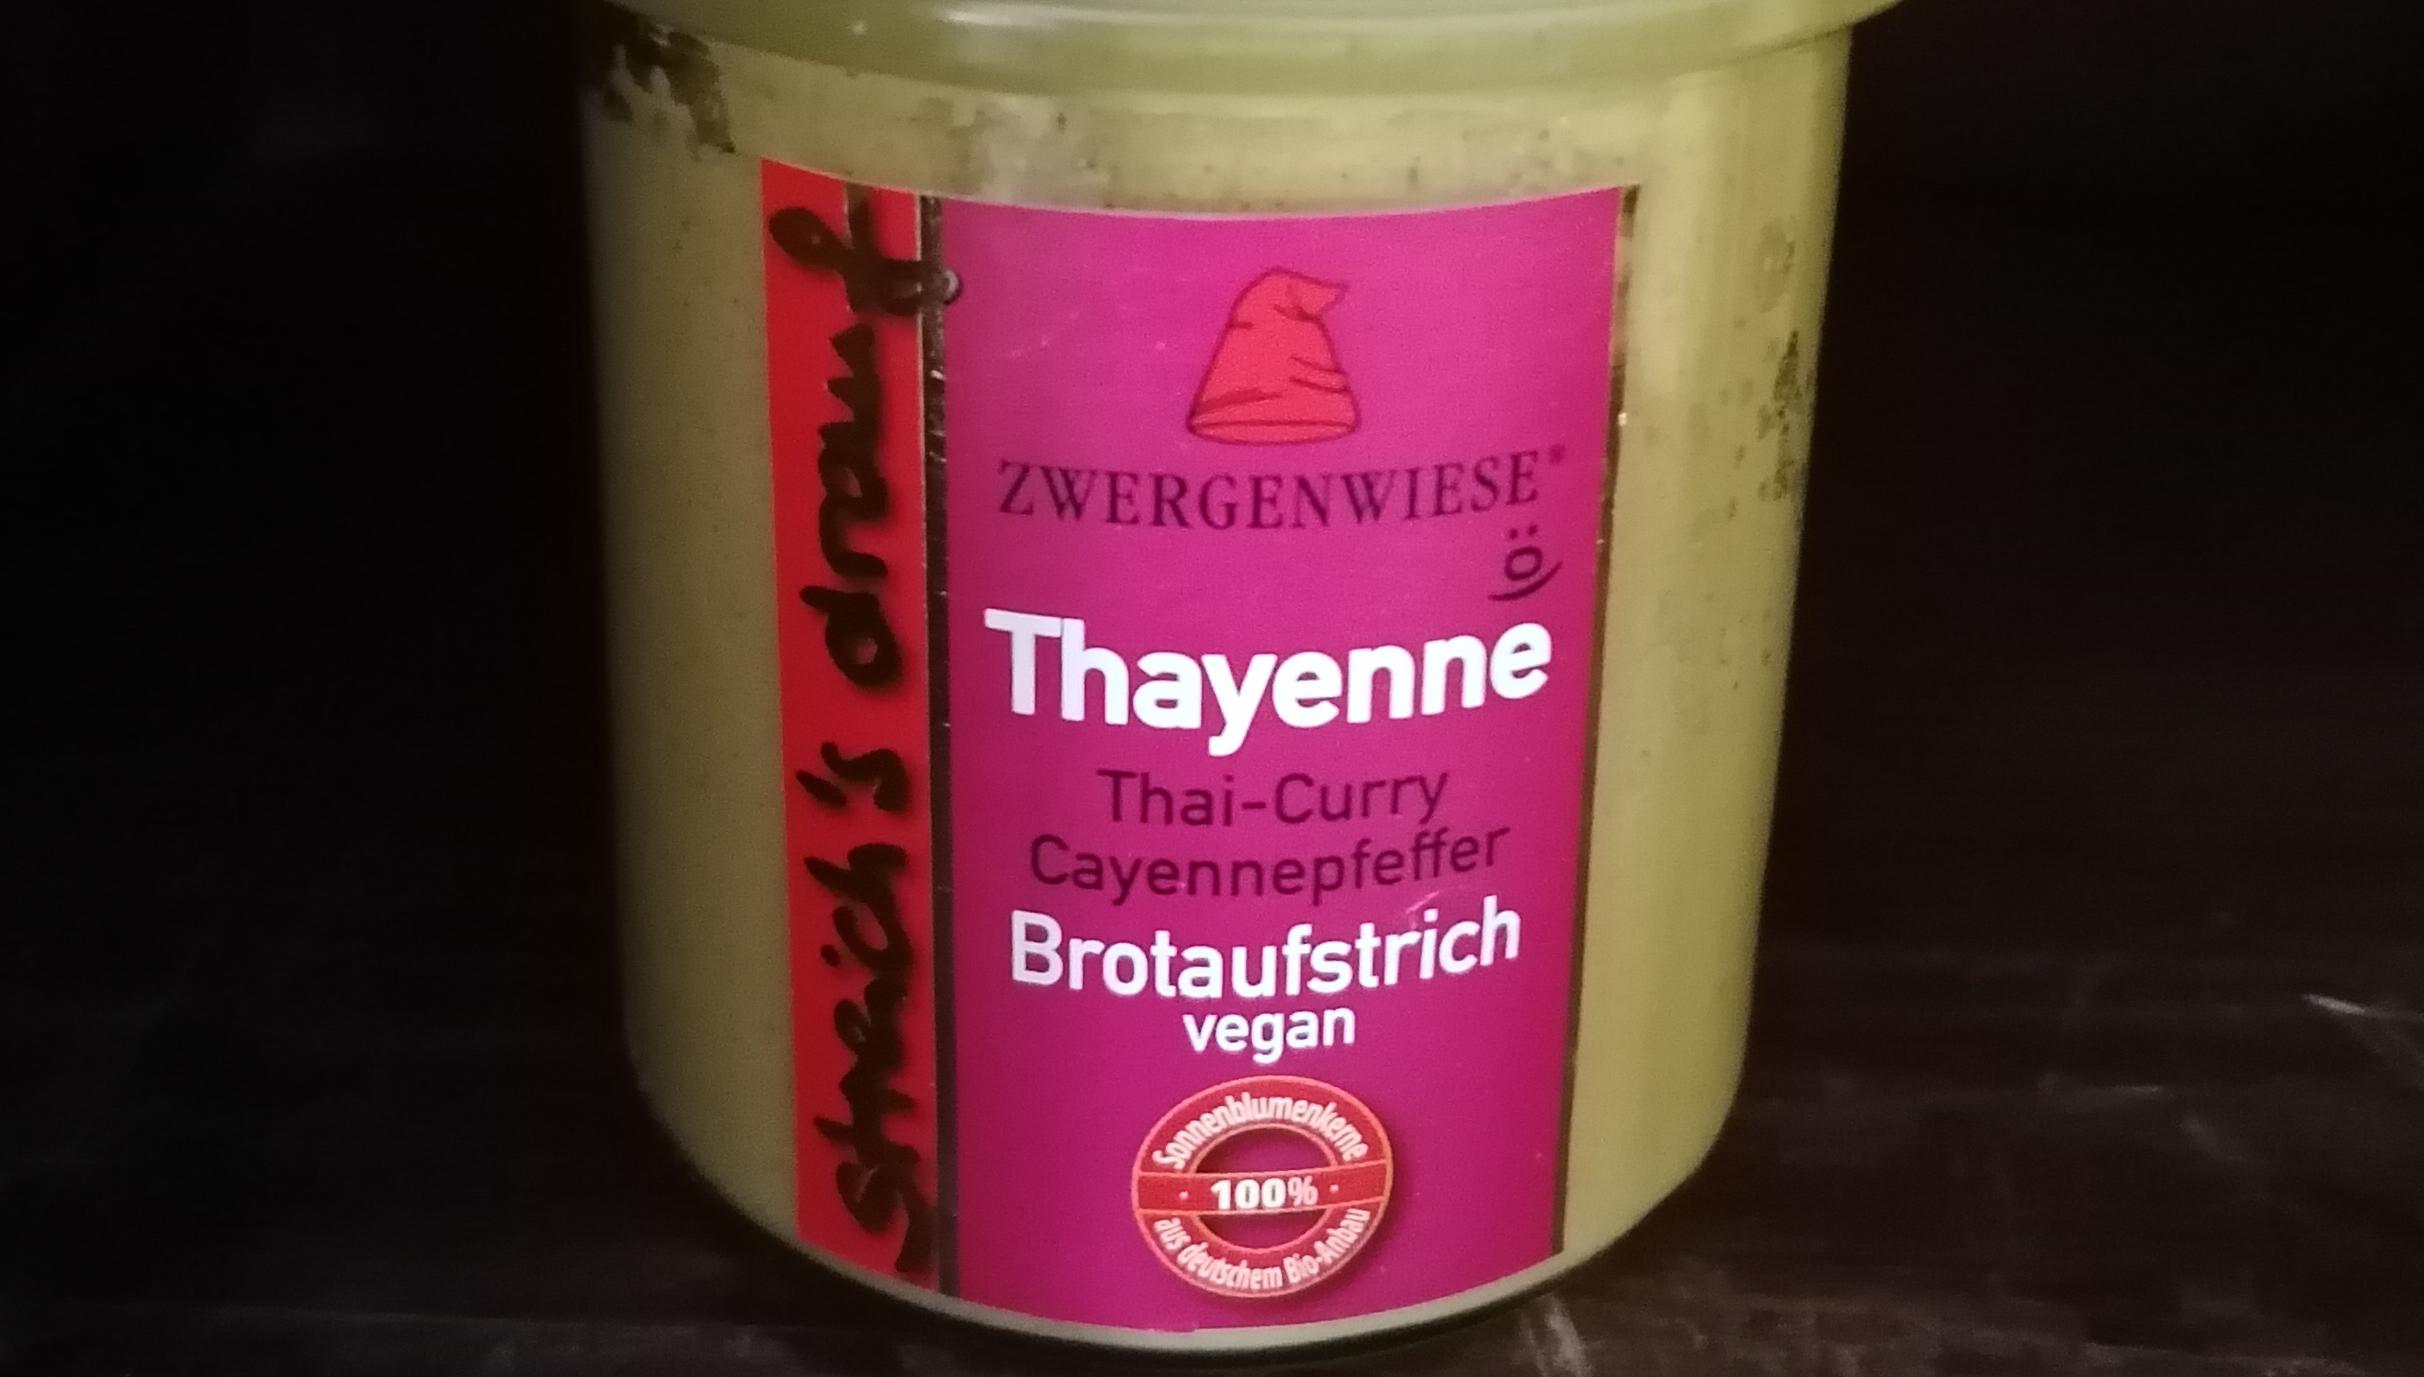 Aufstrich Zwergenwiese: Streich´s drauf - Thayenne / Thai-Curry unc Cayennepfeffer